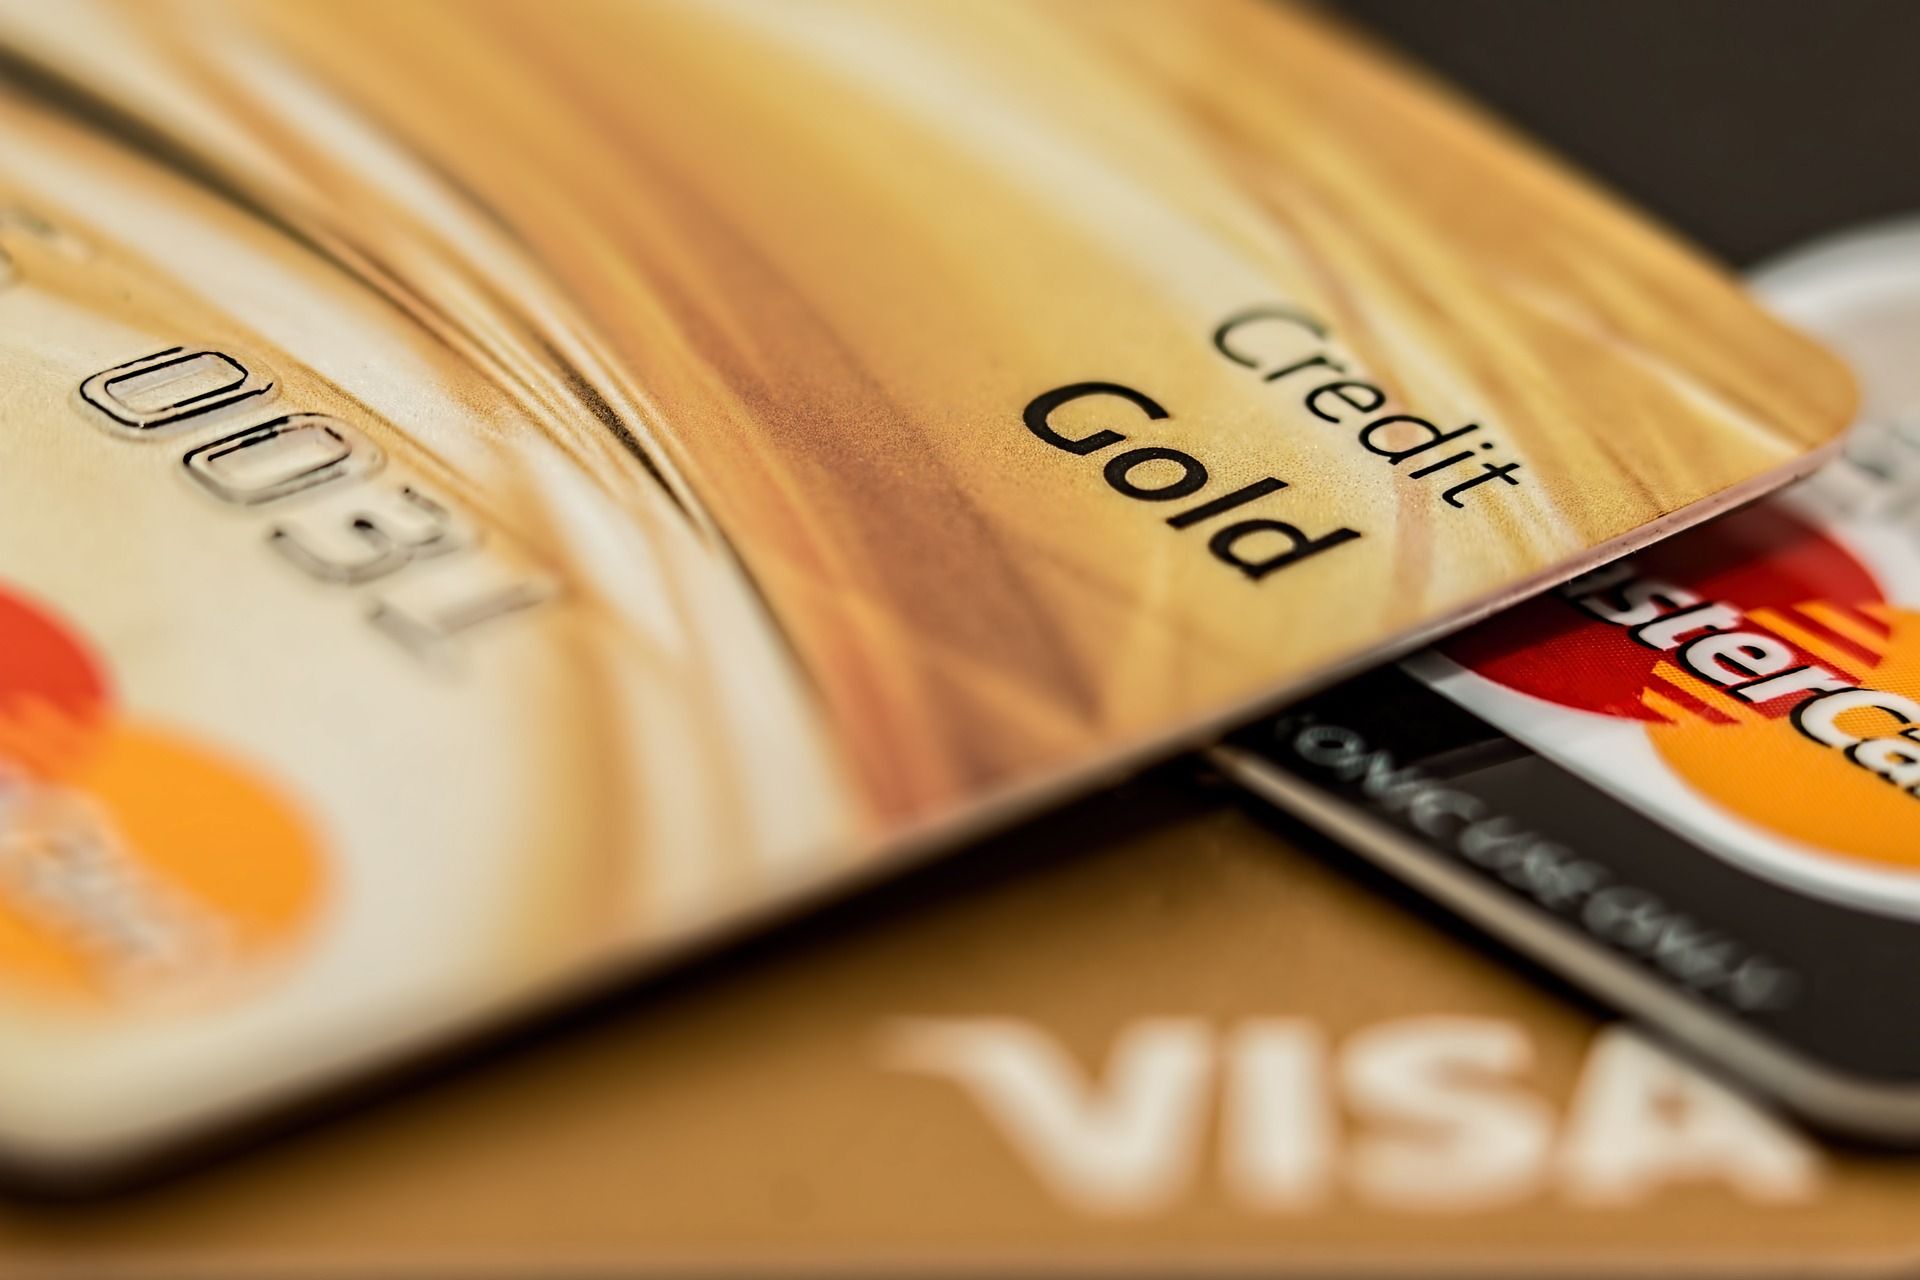 Zahlung per Kreditkarte wieder möglich